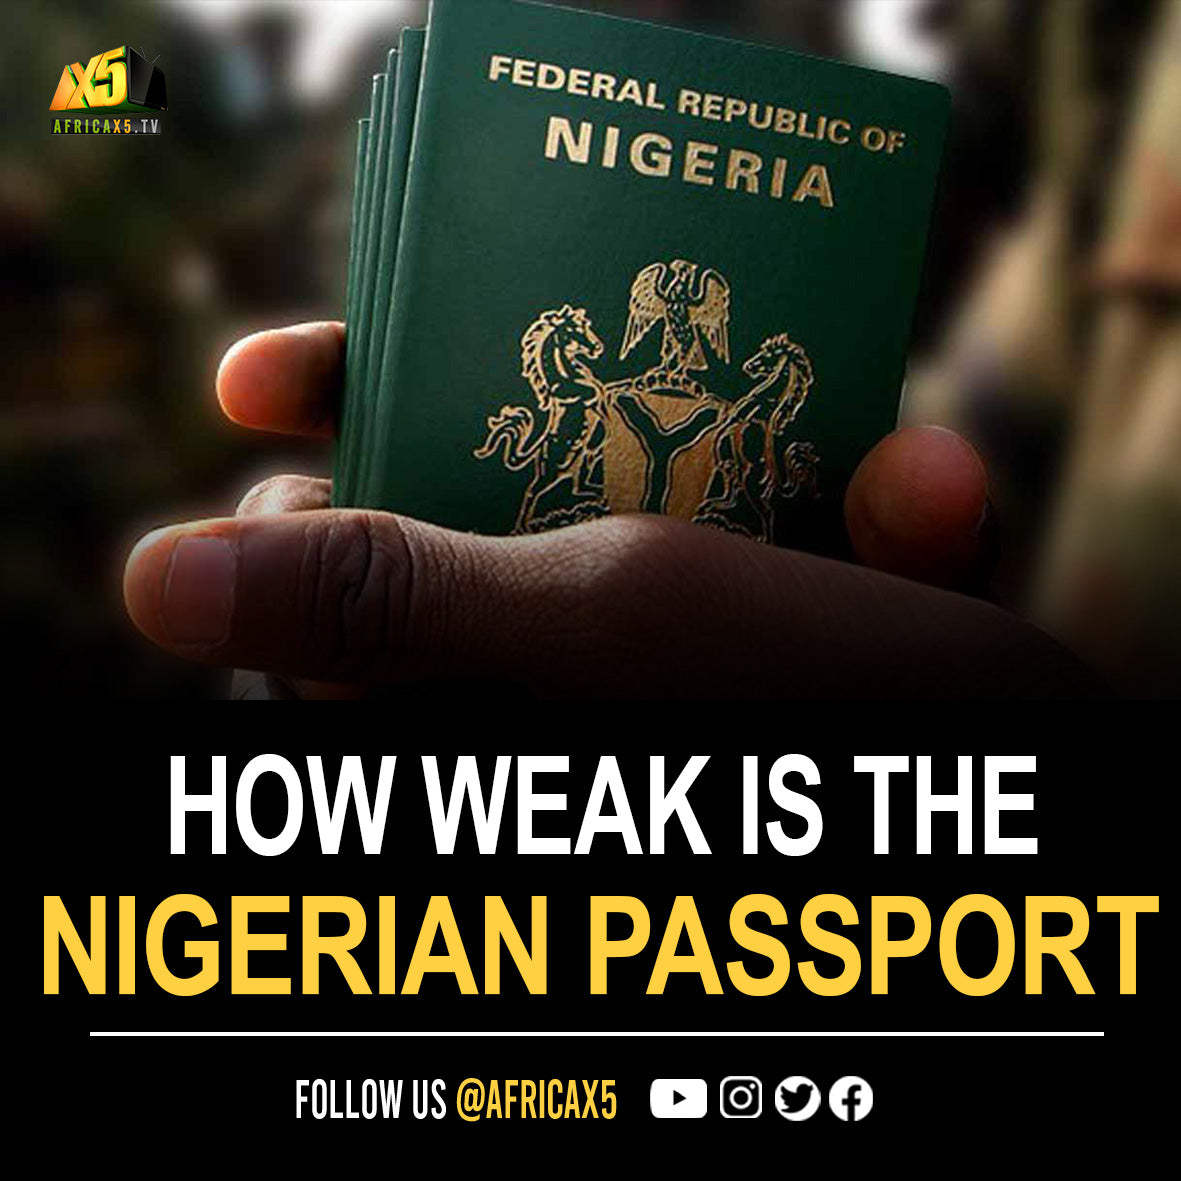 How weak is the Nigerian passport of Africans?